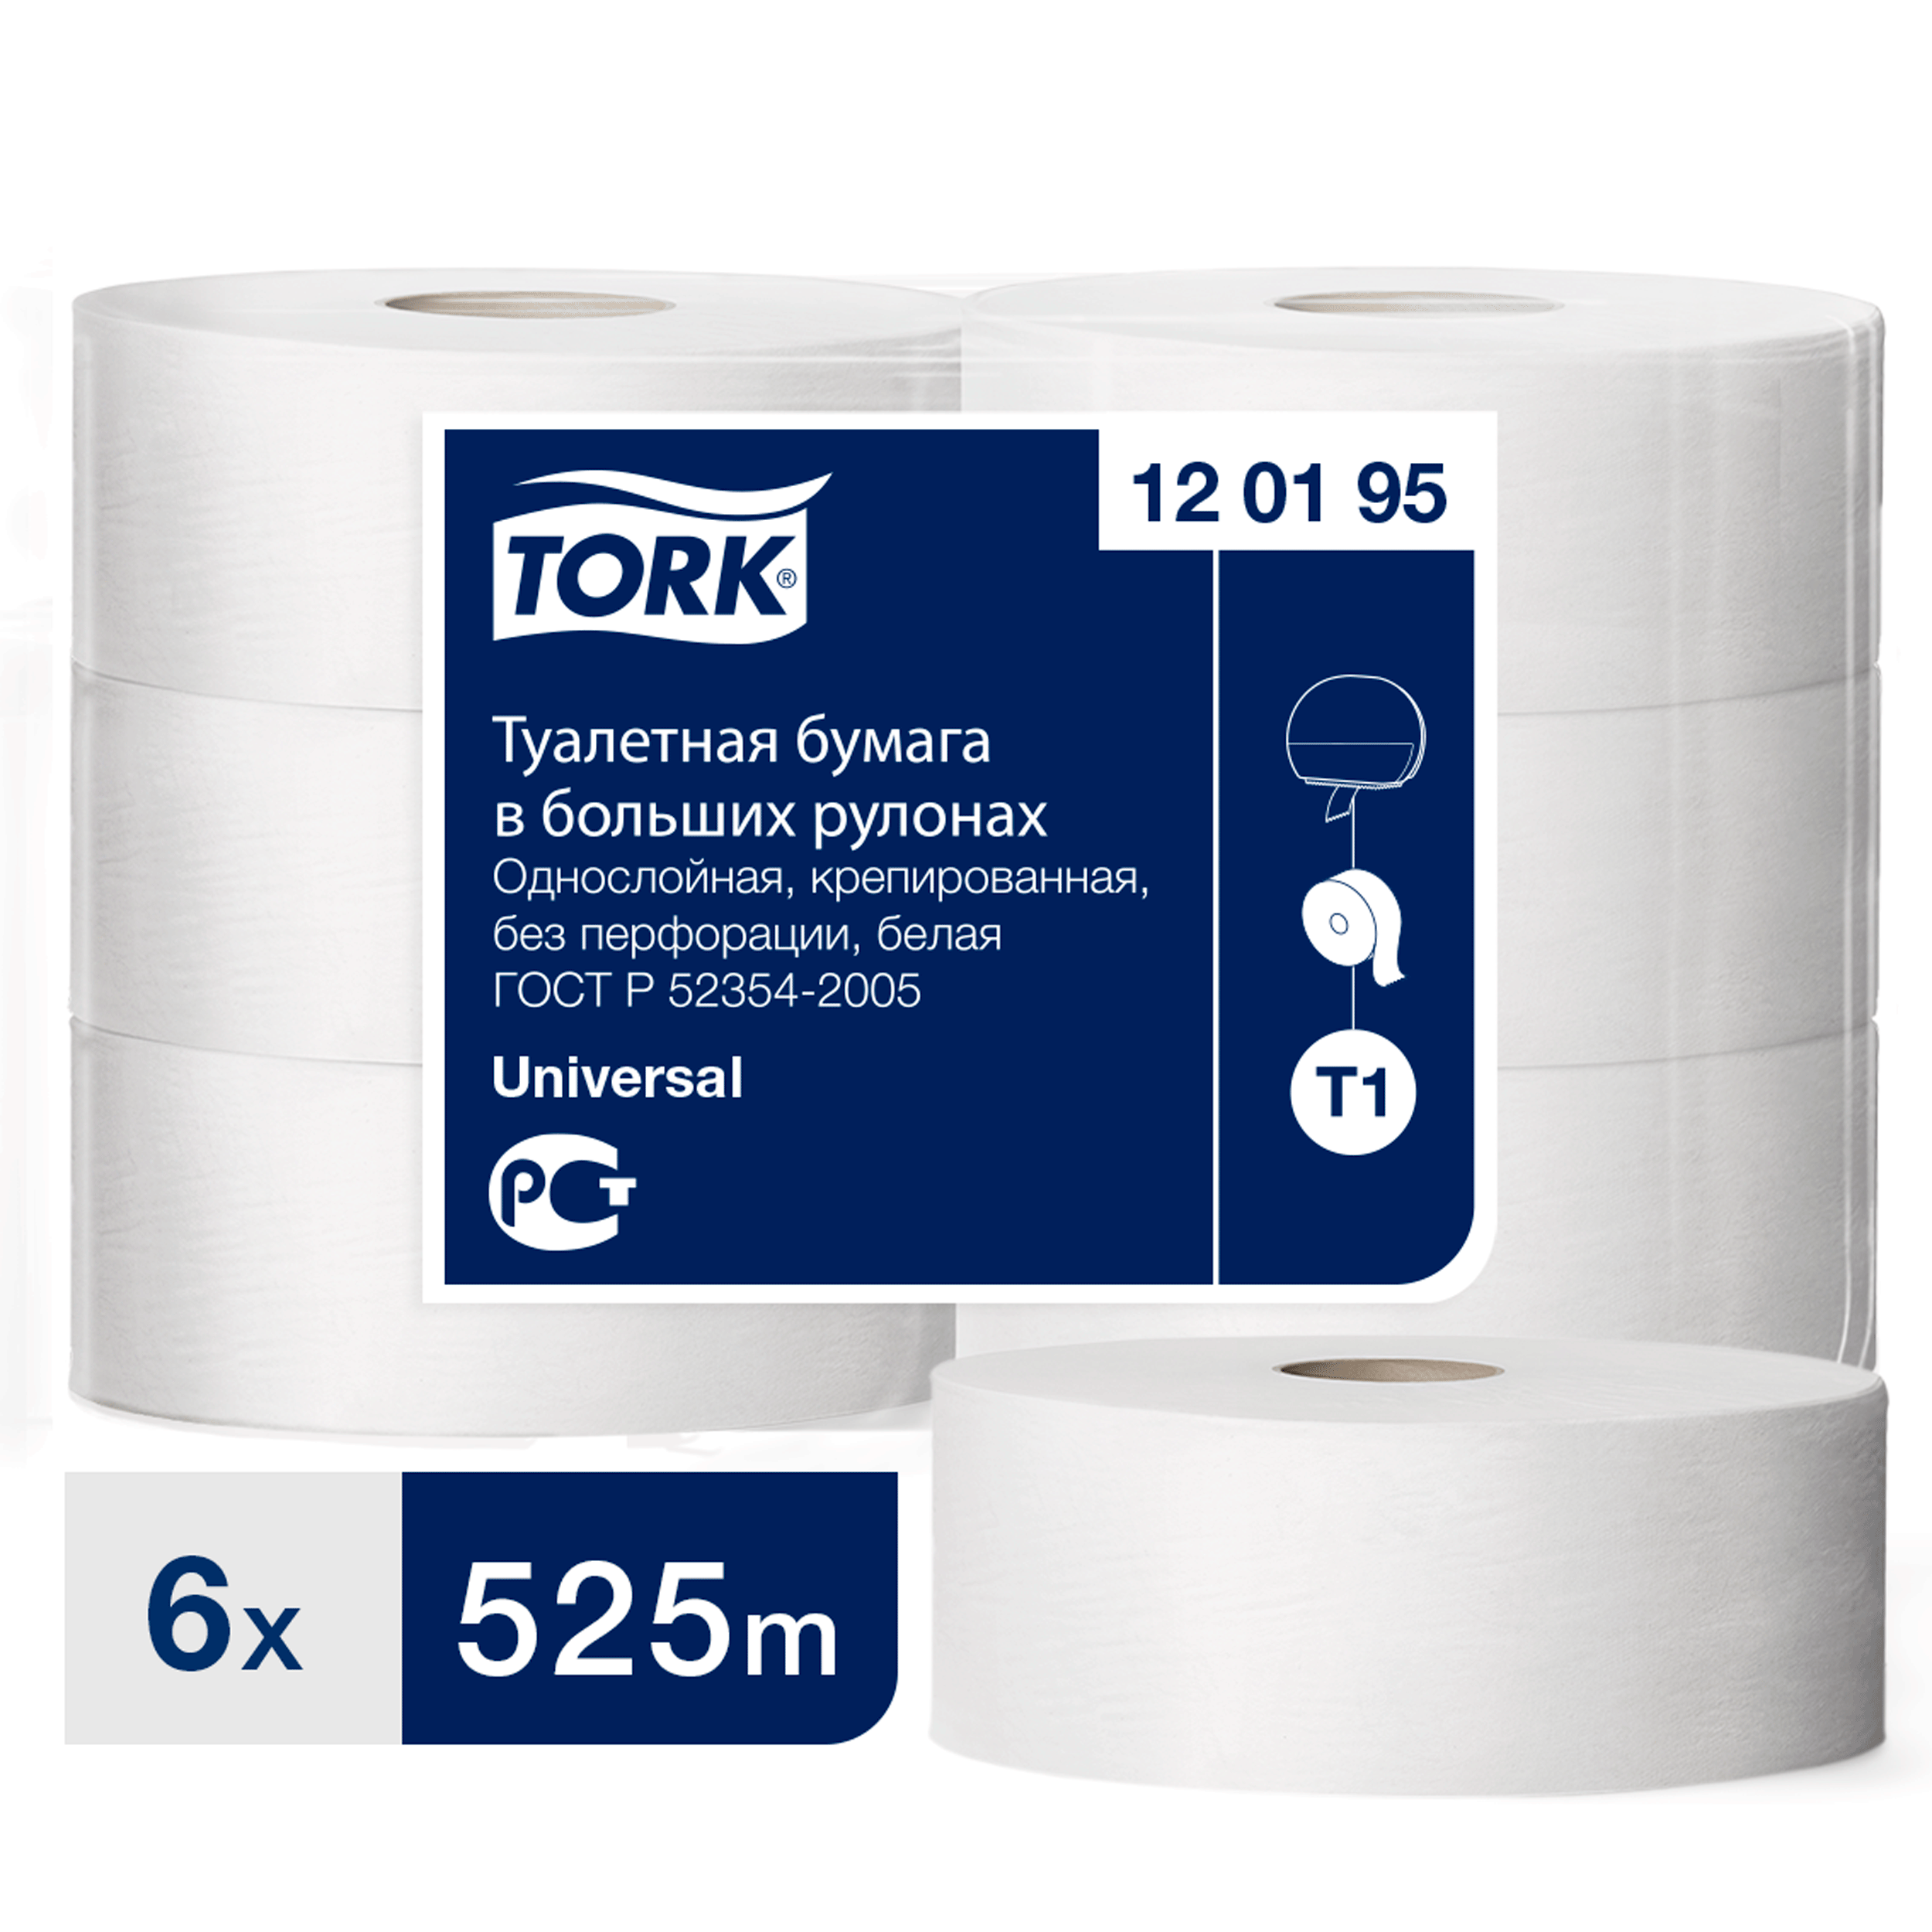 Туалетная бумага Tork в больших рулонах, T1, 1 слой, 525 м, ширина 9,5см, 6 шт туалетная бумага tork universal в мини рулонах t2 200мх9 5см 1cл белая 12 шт